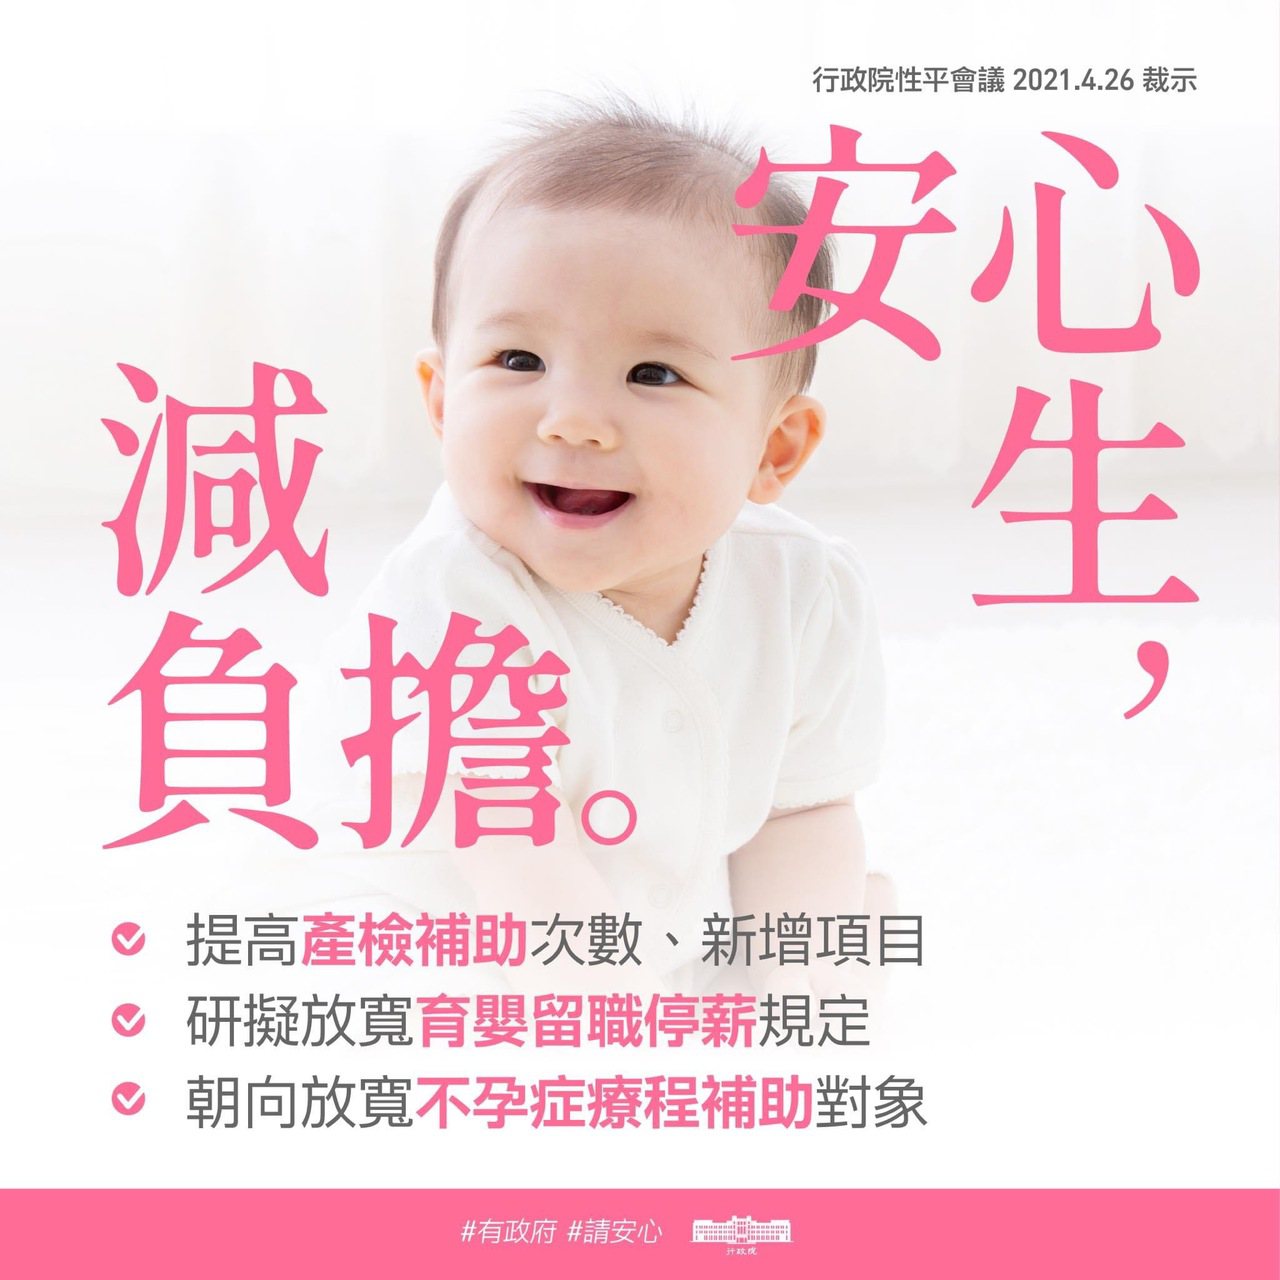 蘇貞昌承諾政府將研擬提高產檢次數、擴大不孕症補助對象，以及放寬育嬰留職停薪等項目。